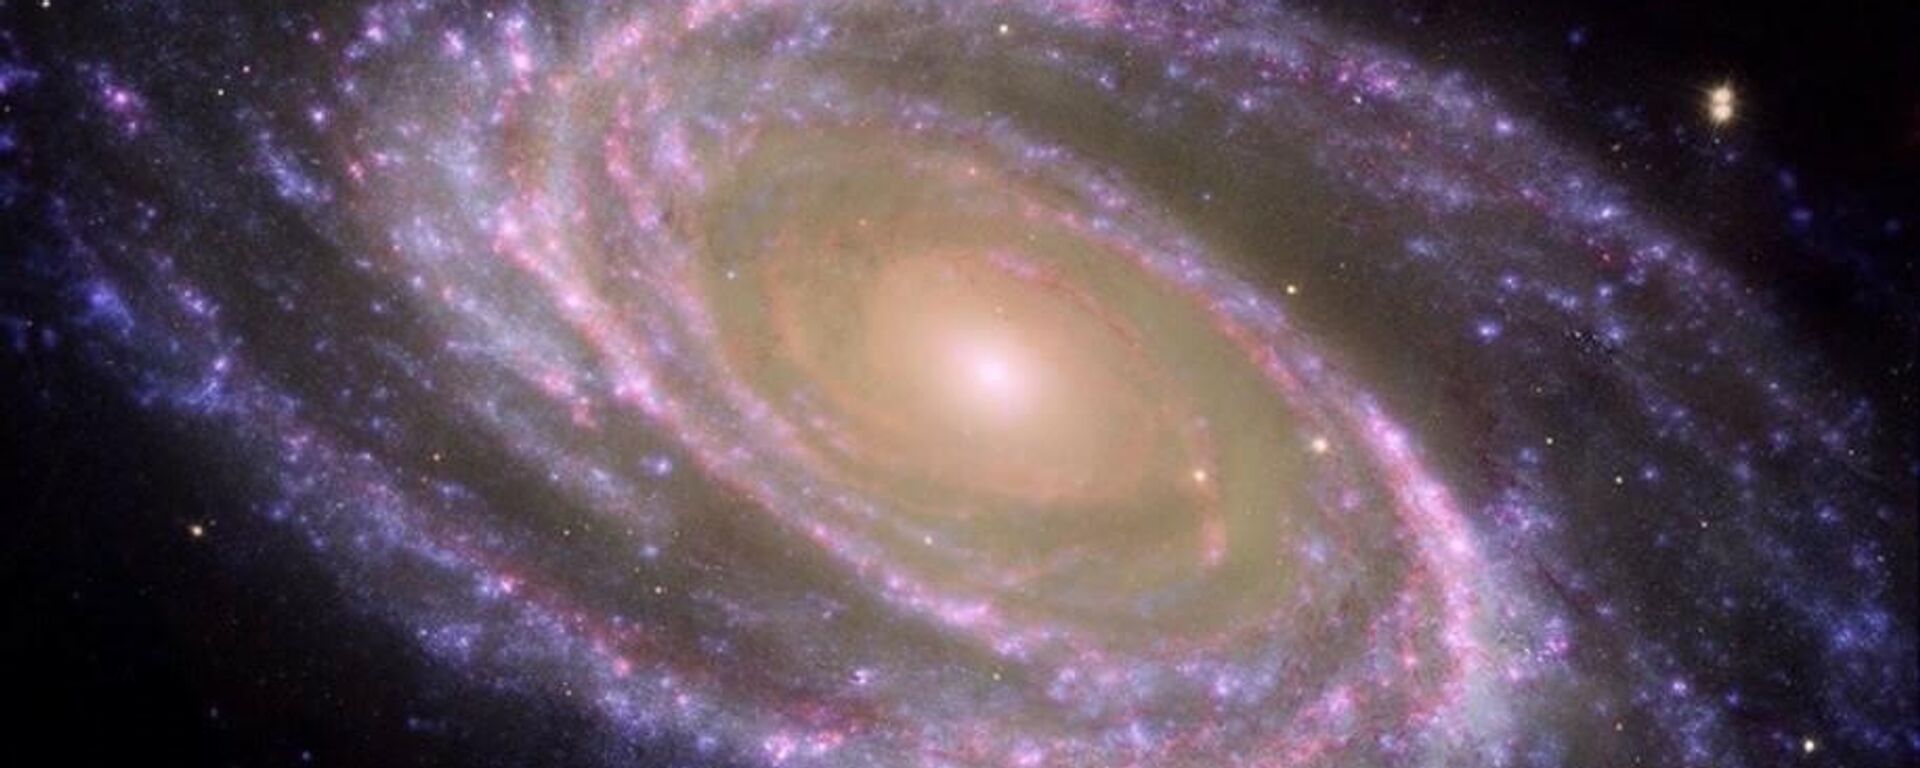 Esto es una galaxia espiral cercana, la M81, en el centro está el bulbo (rojizo) y el exterior (azulado) los brazos espirales, donde se crean las estrellas - Sputnik Mundo, 1920, 04.03.2022